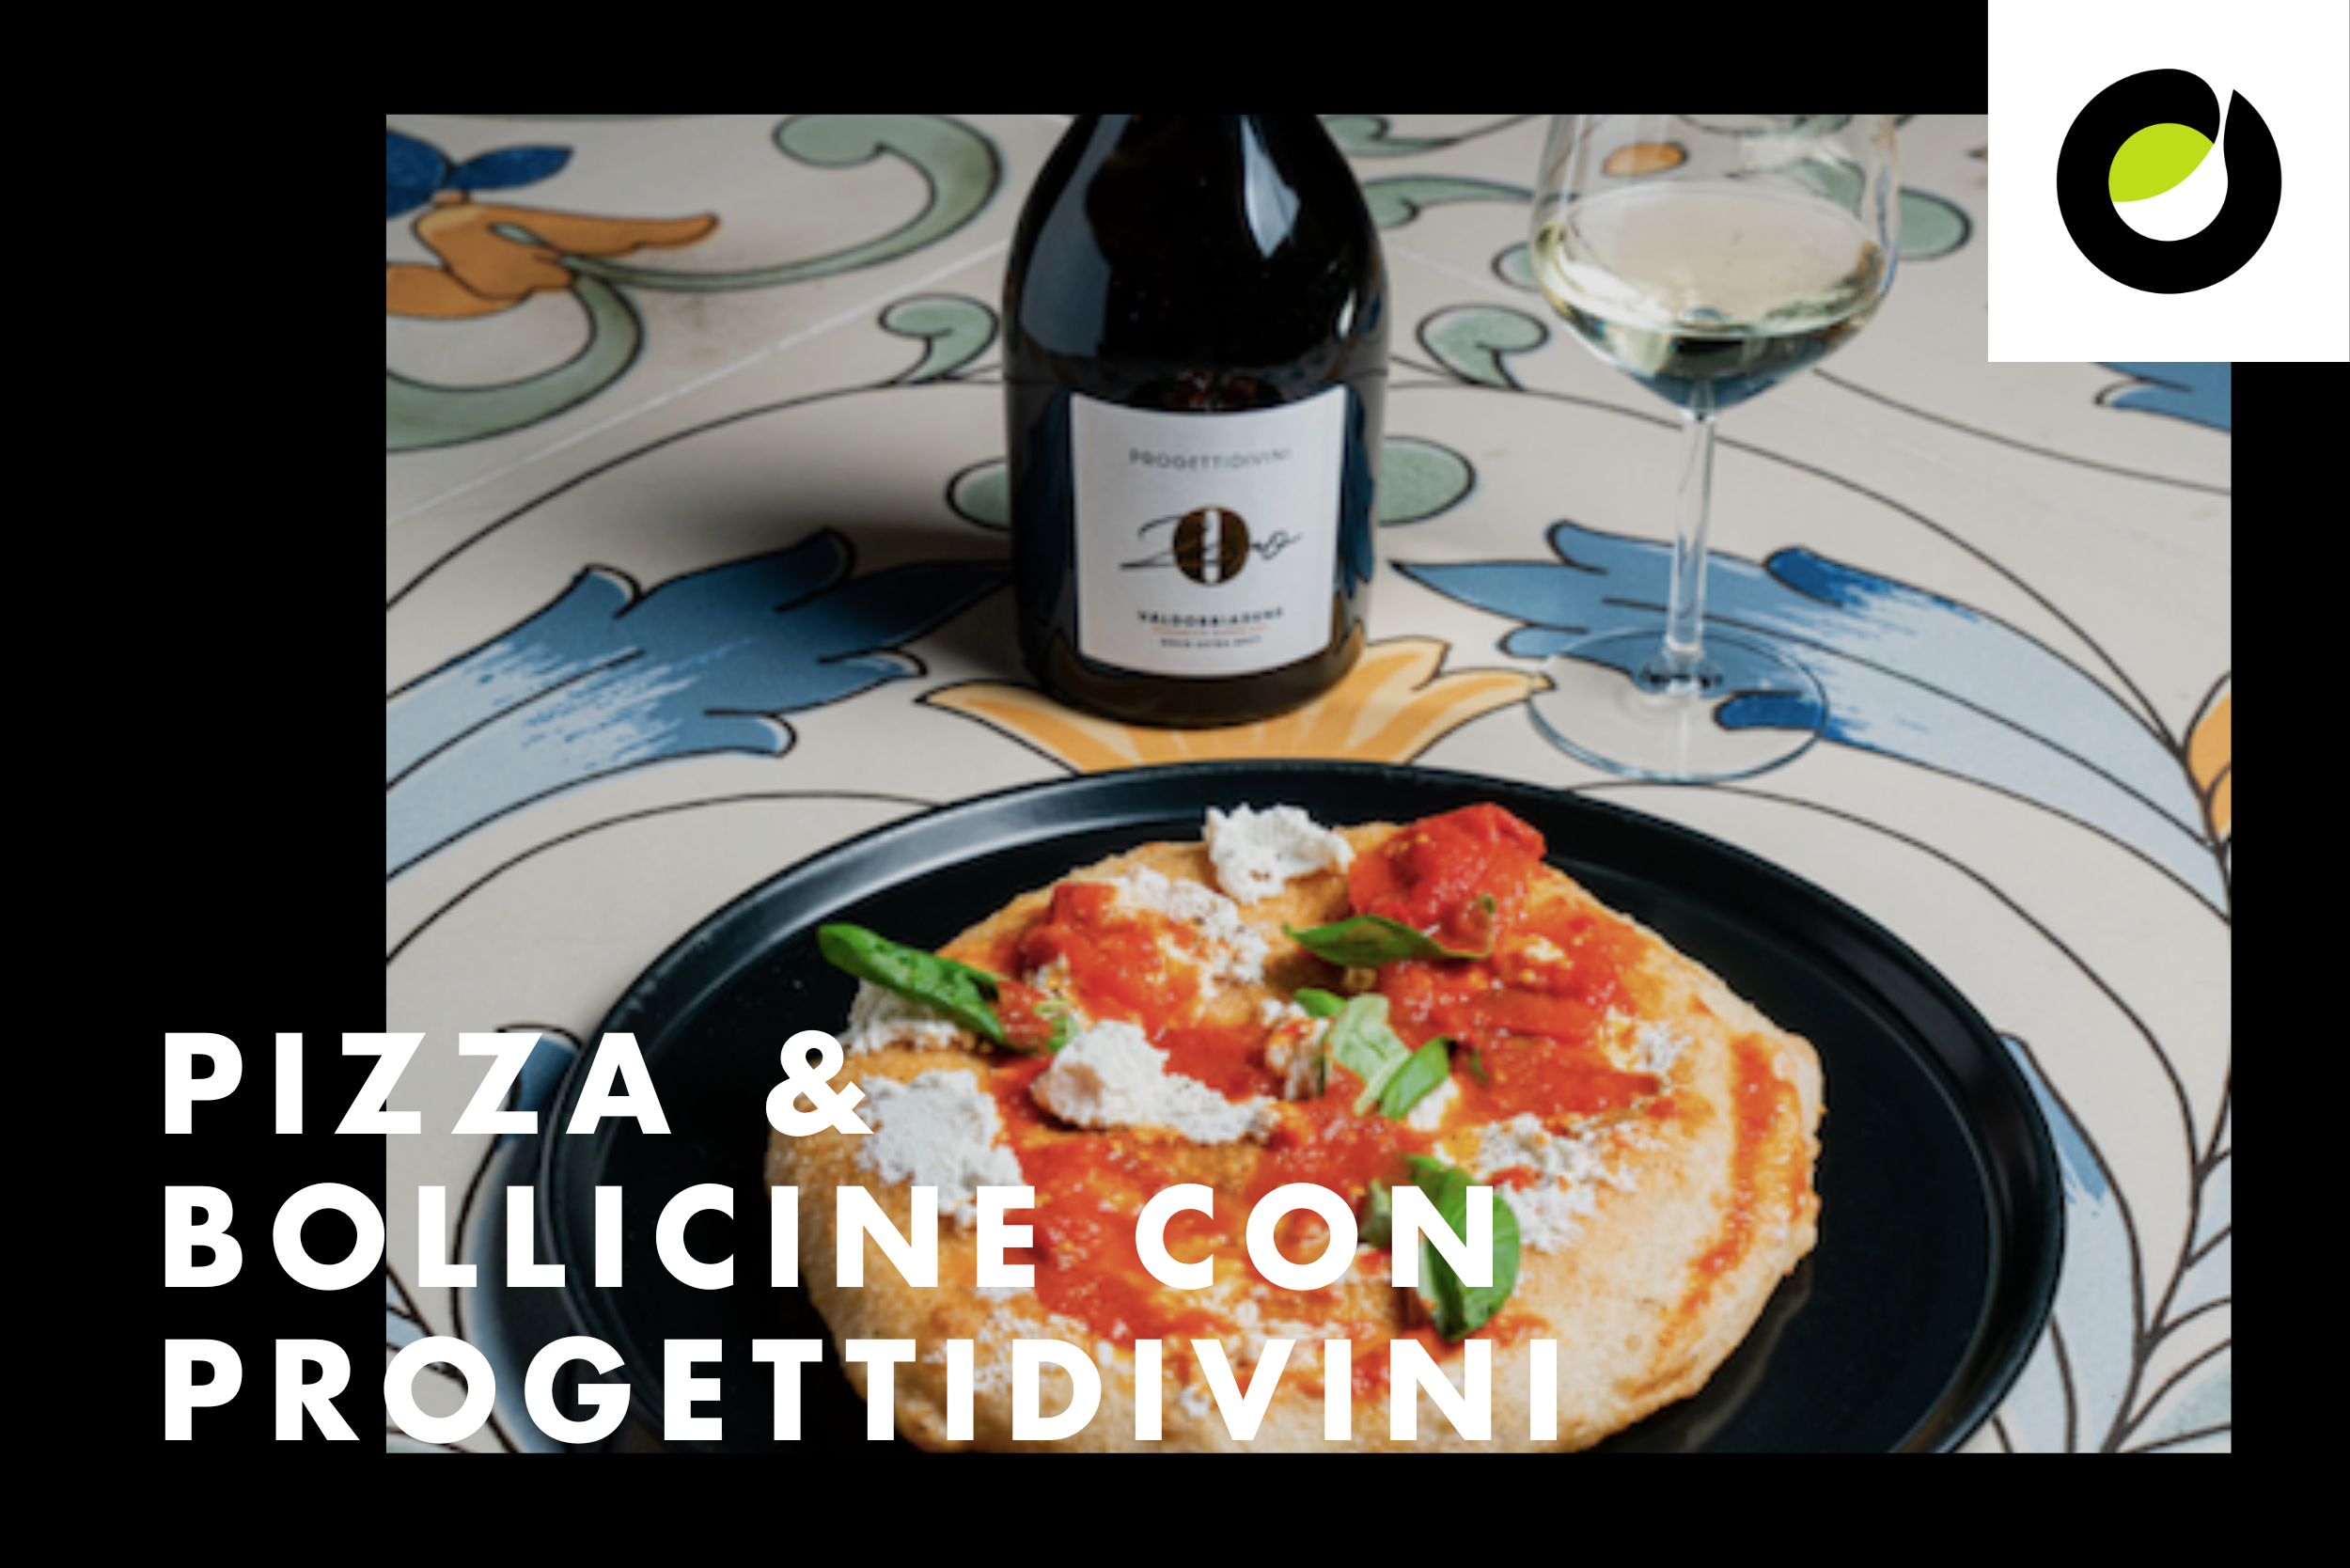 Pizza & Bollicine con Progettidivini e i migliori maestri pizzaioli d’Italia